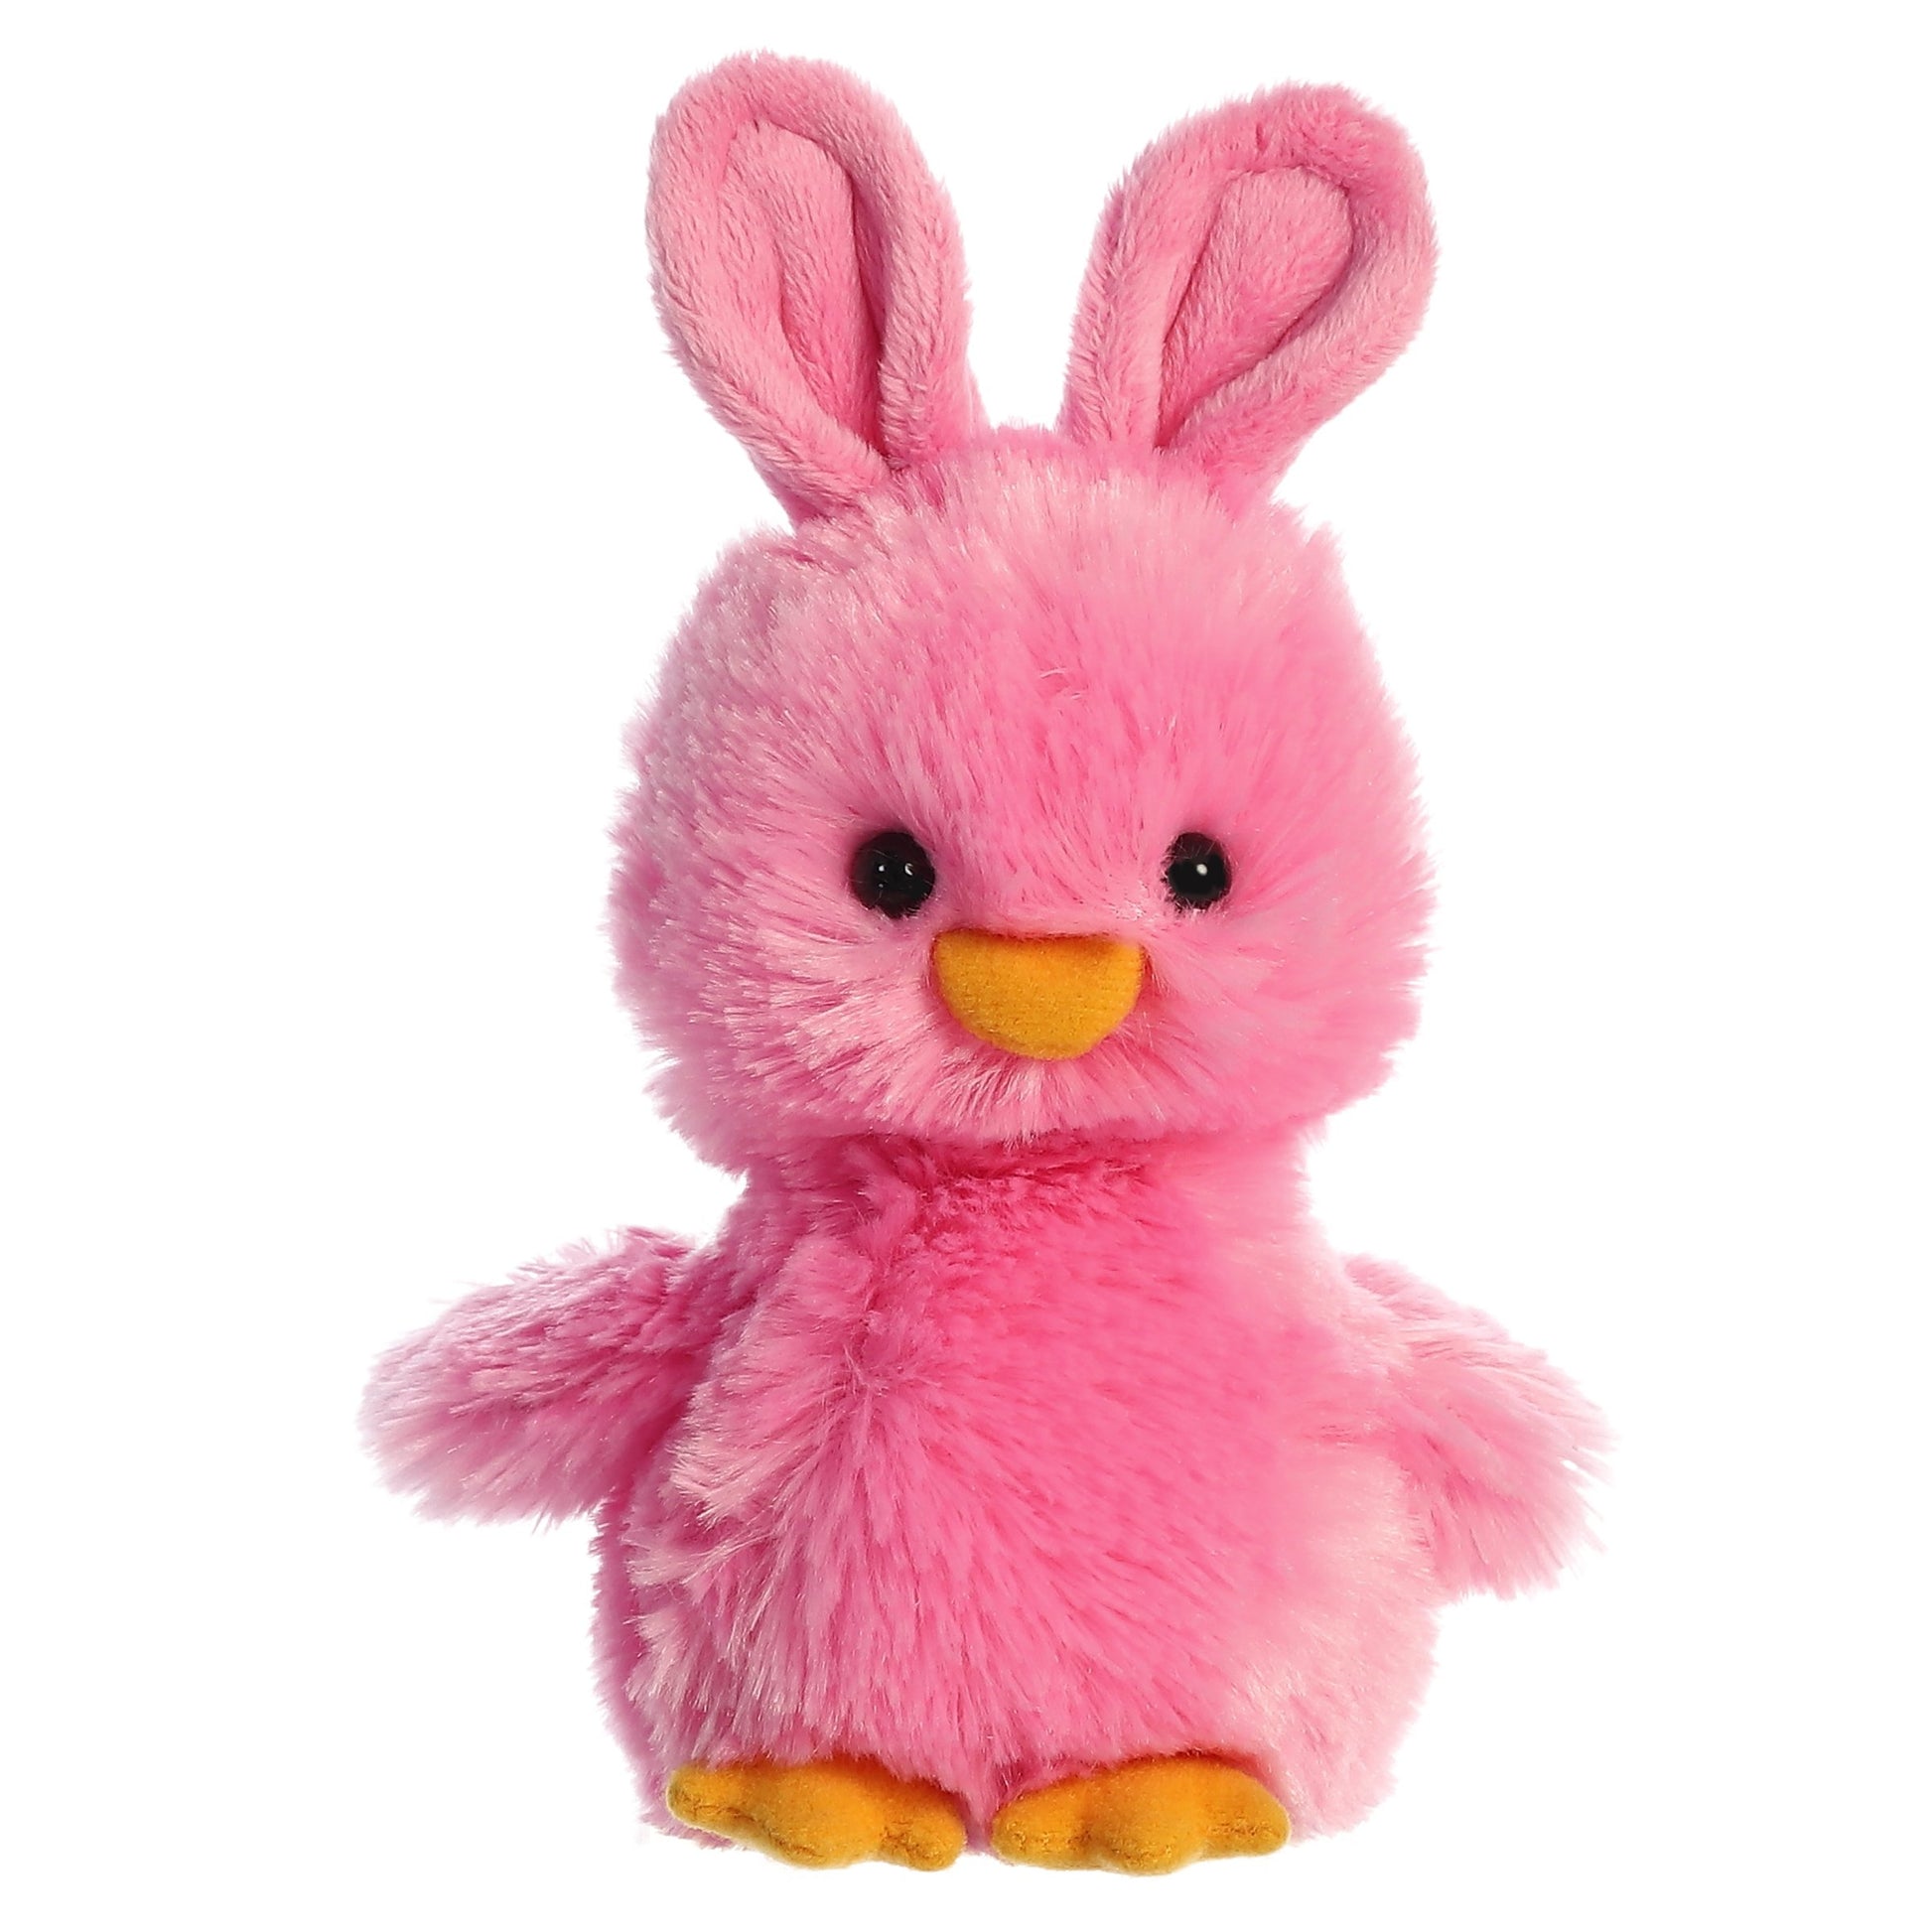 Peep-Along Chick Pink Plush 6"